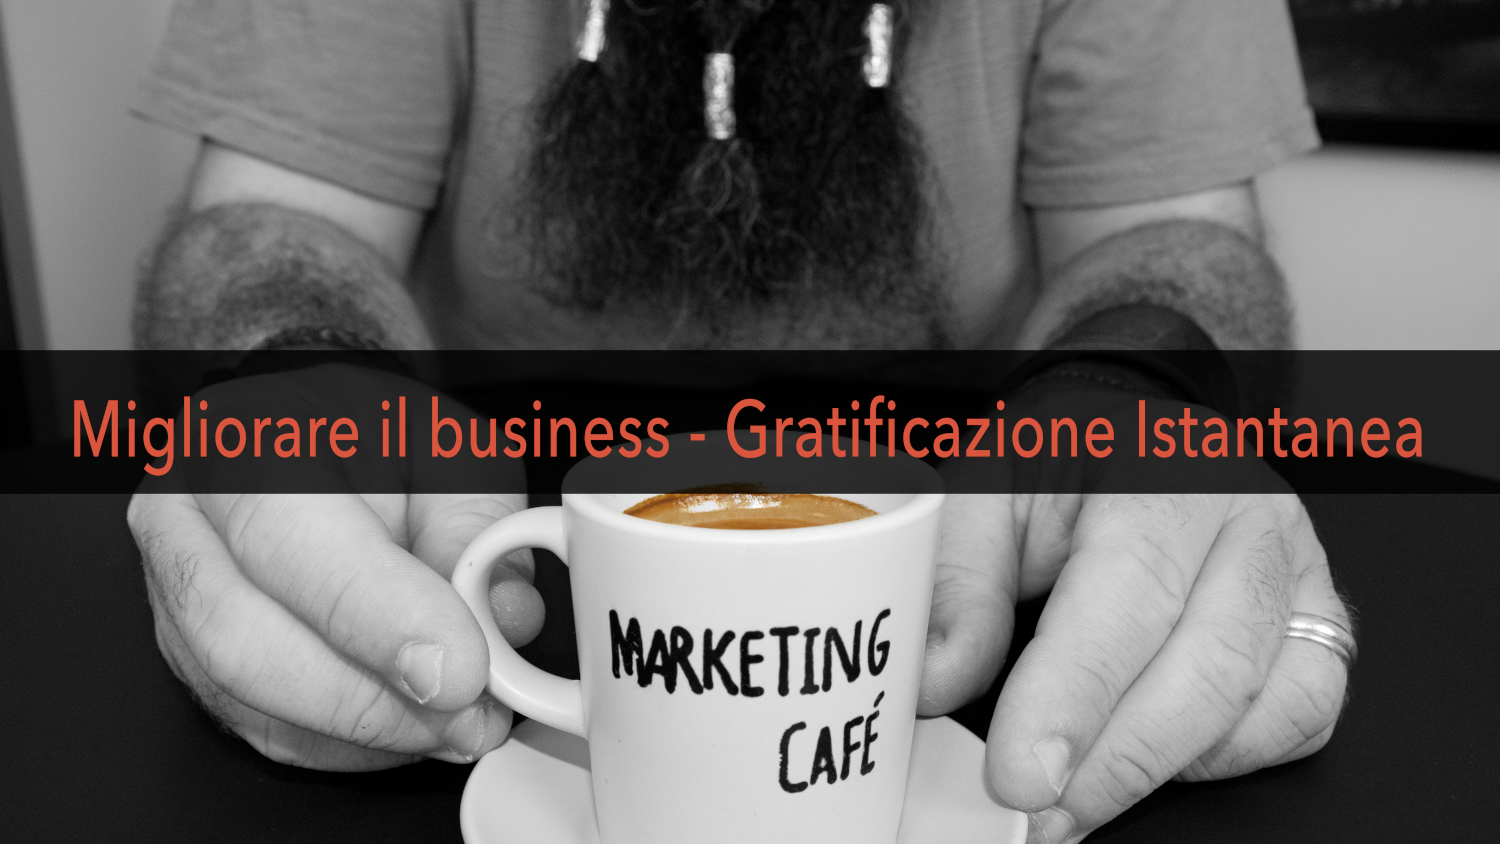 Marketing Café - Come far crescere la tua azienda: la gratificazione istantanea